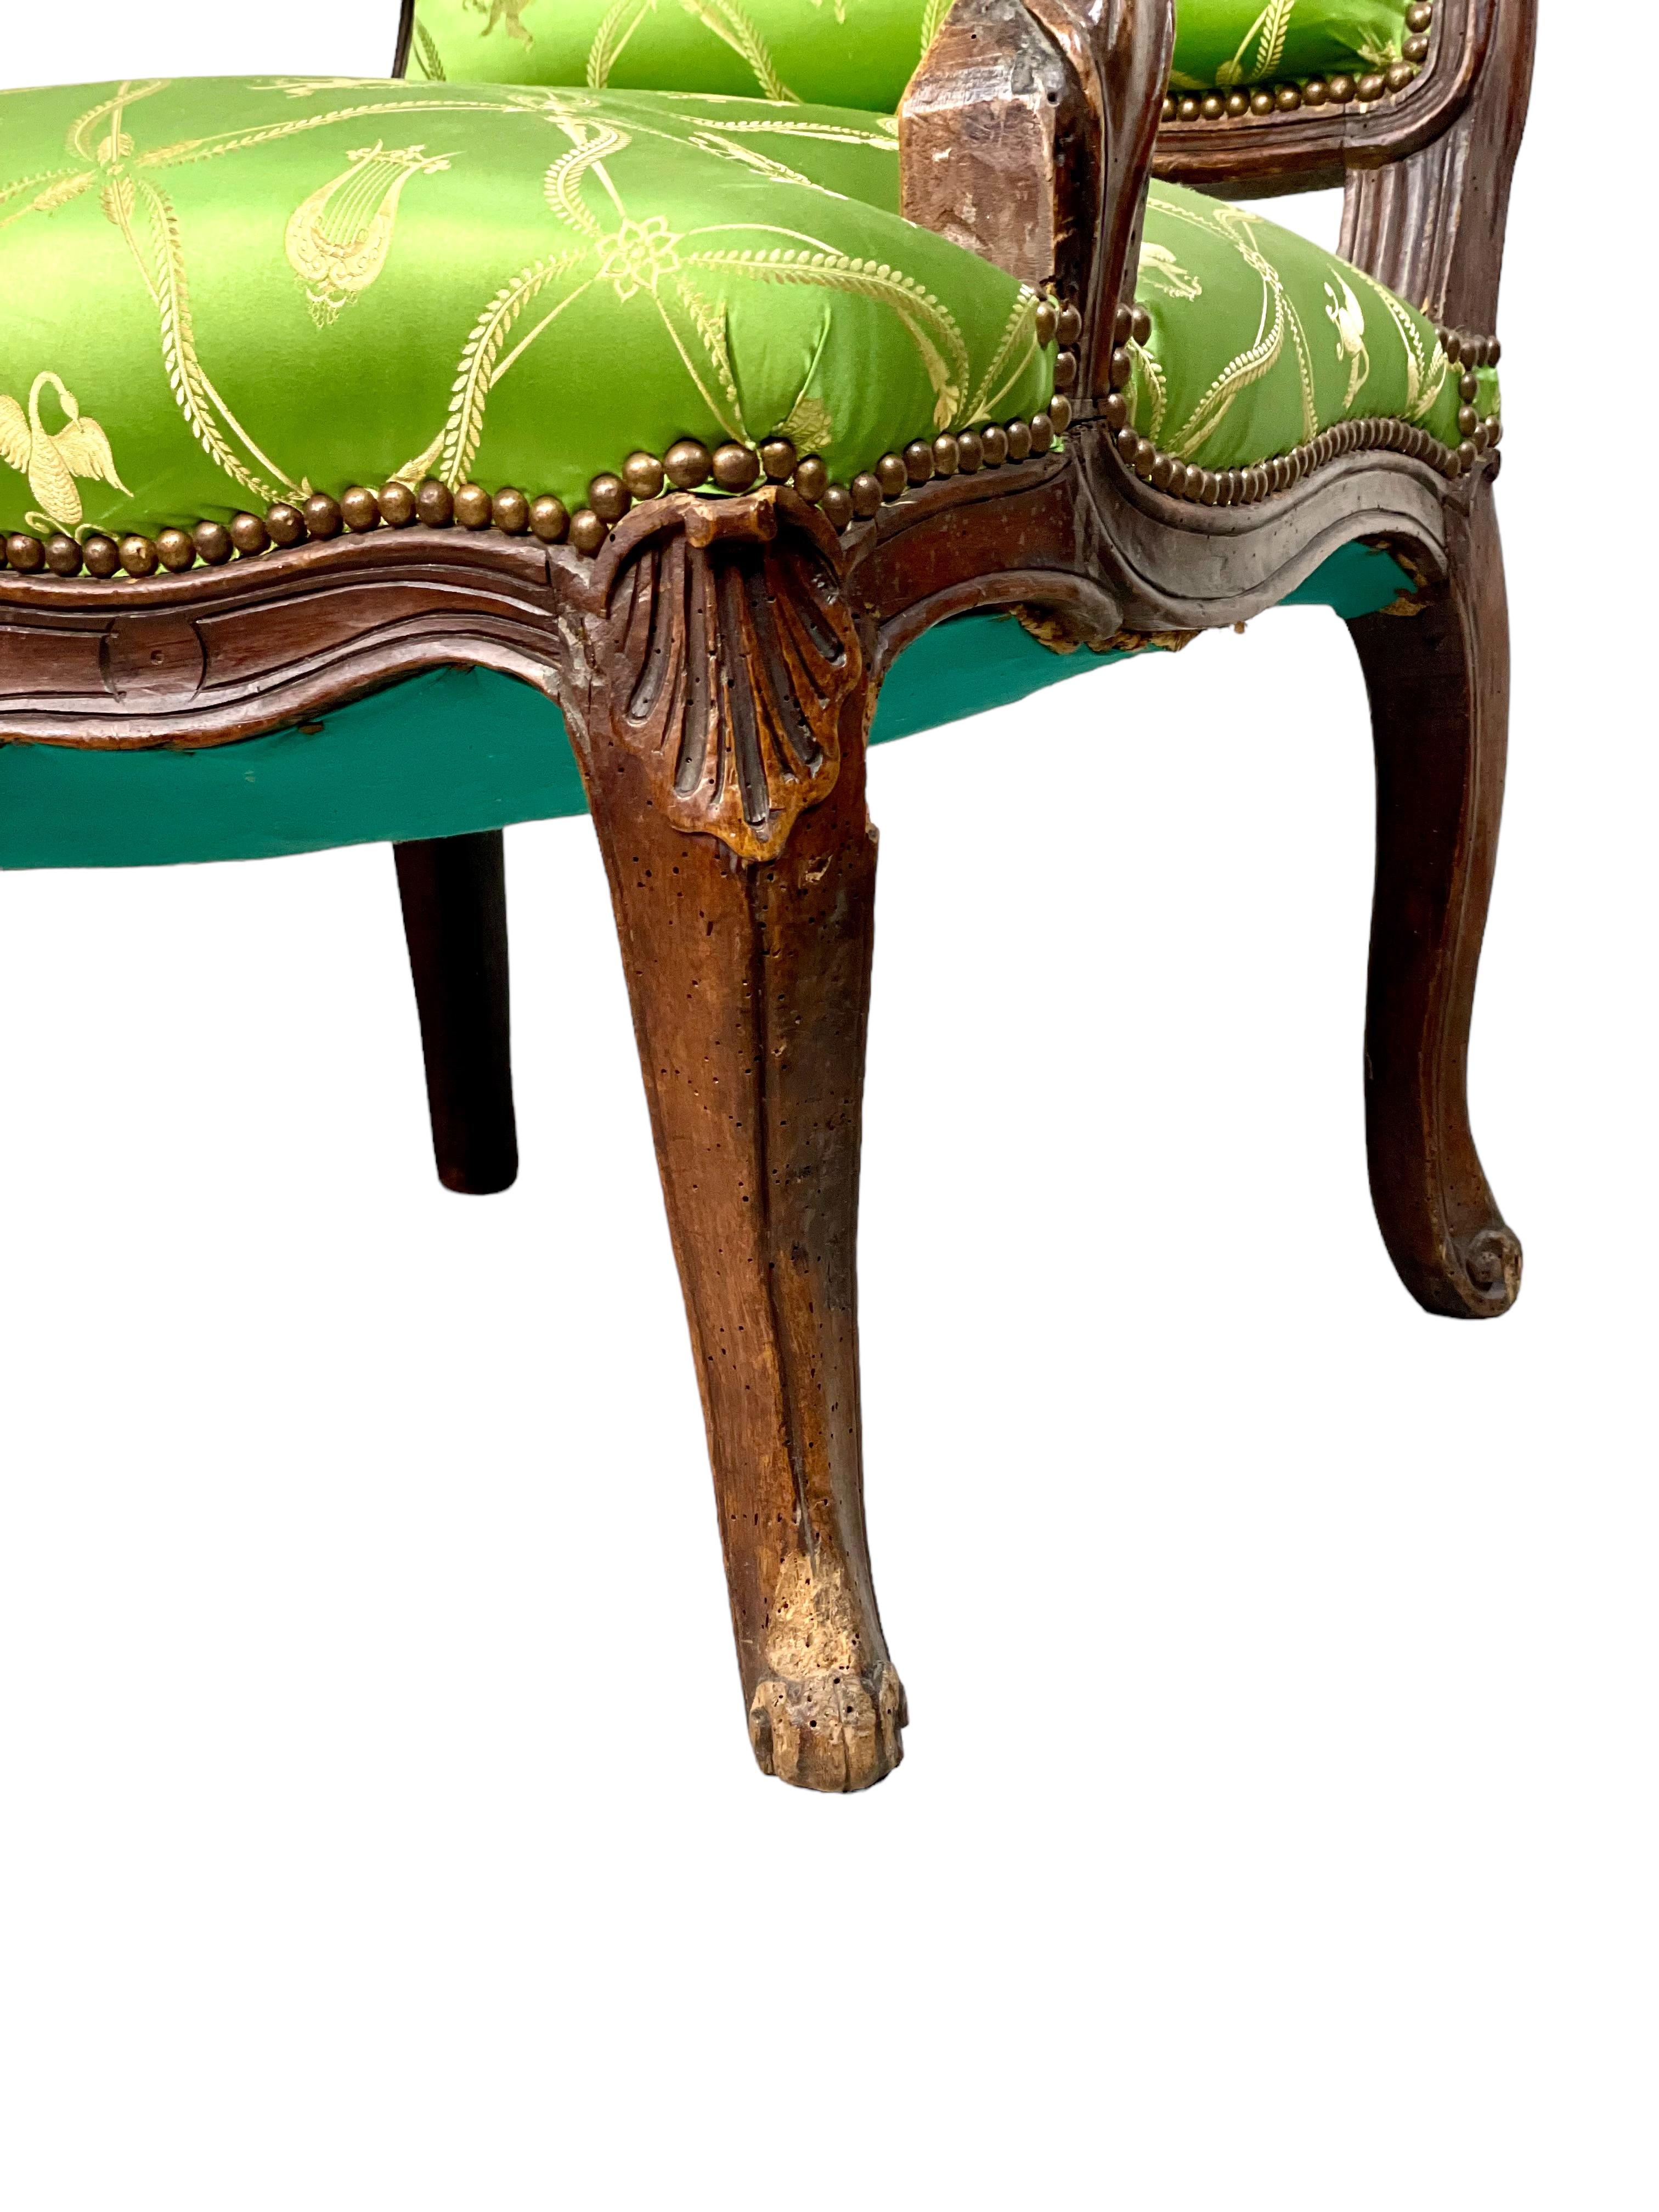 Ein breiter und komfortabler Fauteuil im Stil Louis XV, handgeschnitzt im 18. Jahrhundert und mit exquisiter grüner Seidenpolsterung, die mit neoklassischen Motiven wie Leiern, Putten, Pfauen und Schwänen gewebt ist. Die schulterhohe